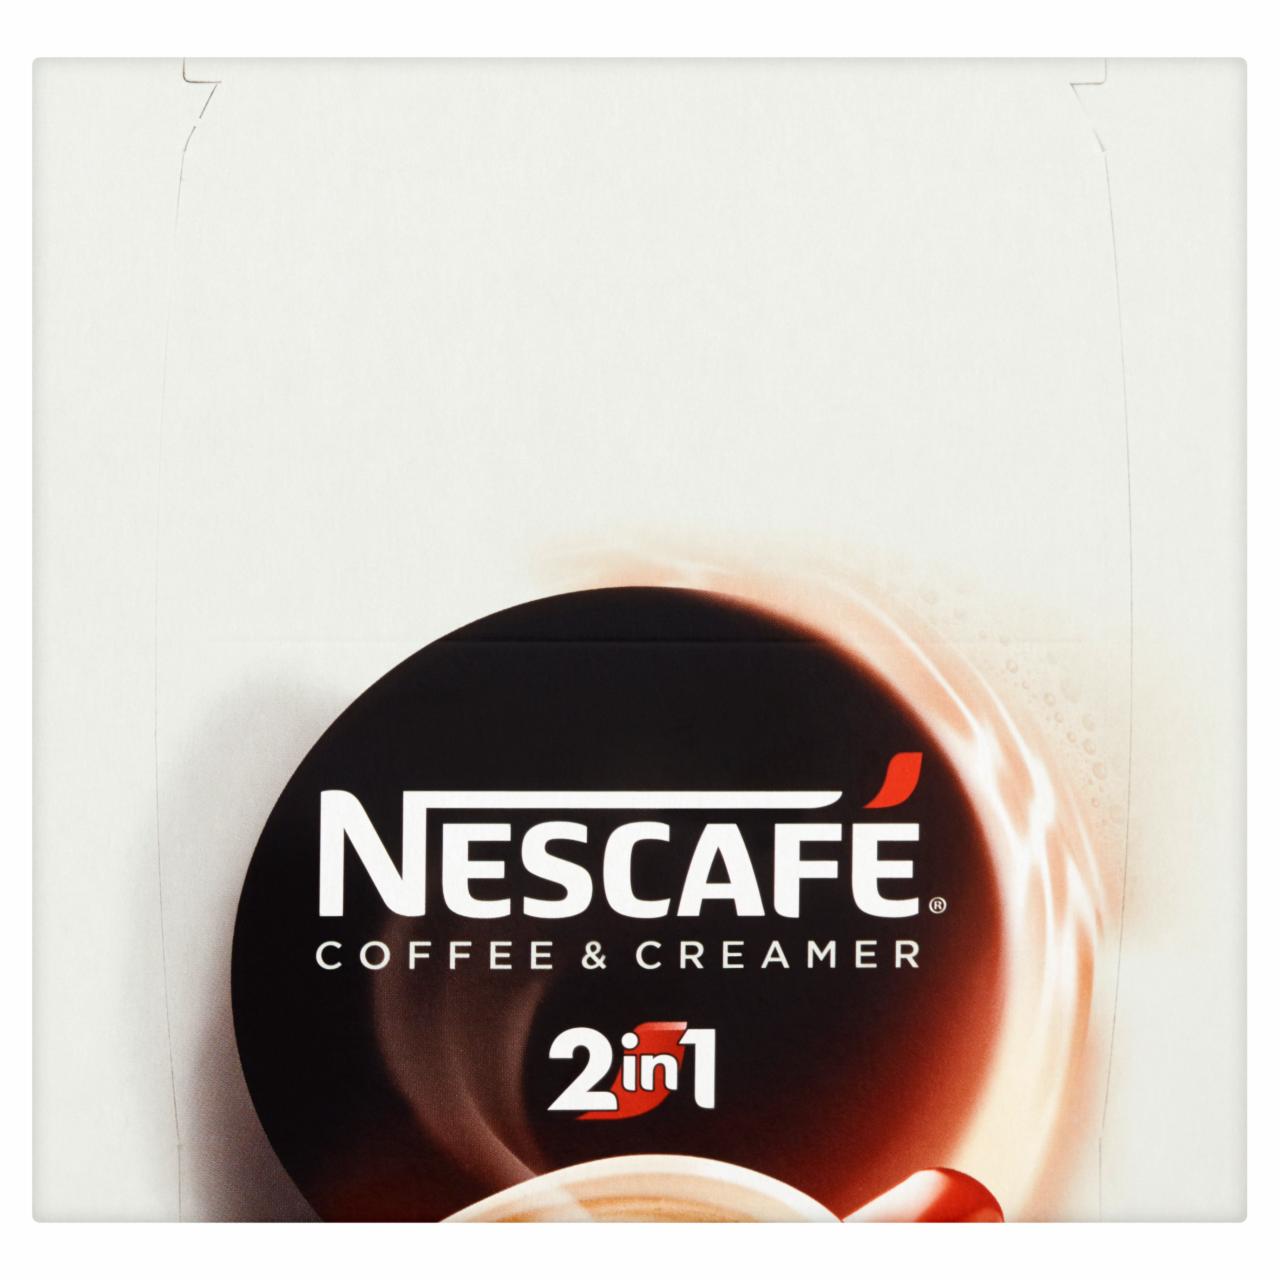 Zdjęcia - Nescafé 2in1 Coffee & Creamer Rozpuszczalny napój kawowy 224 g (28 x 8 g)